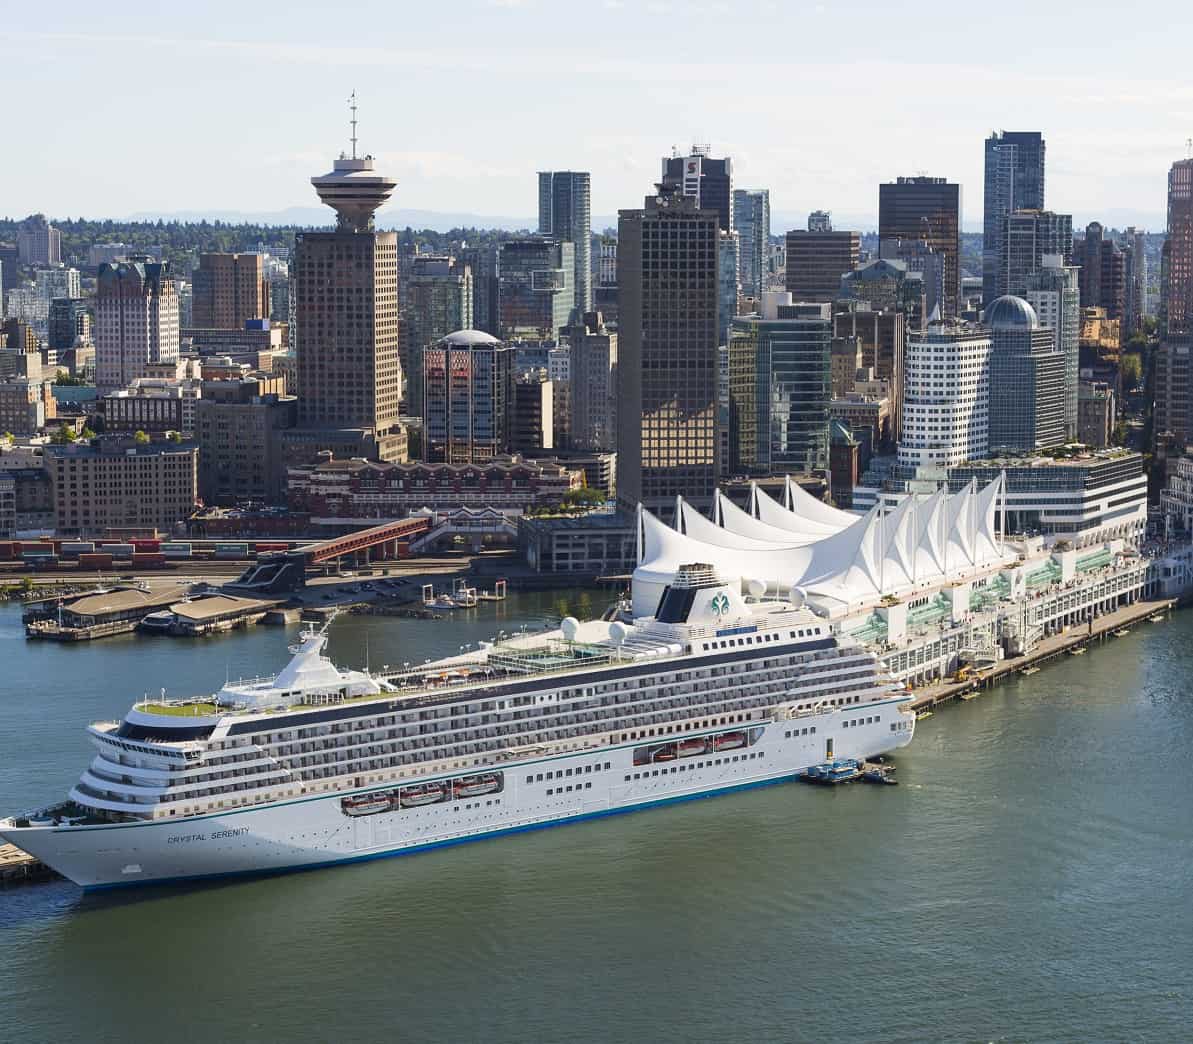 تطبق كندا تدابير بيئية جديدة لسفن الرحلات البحرية